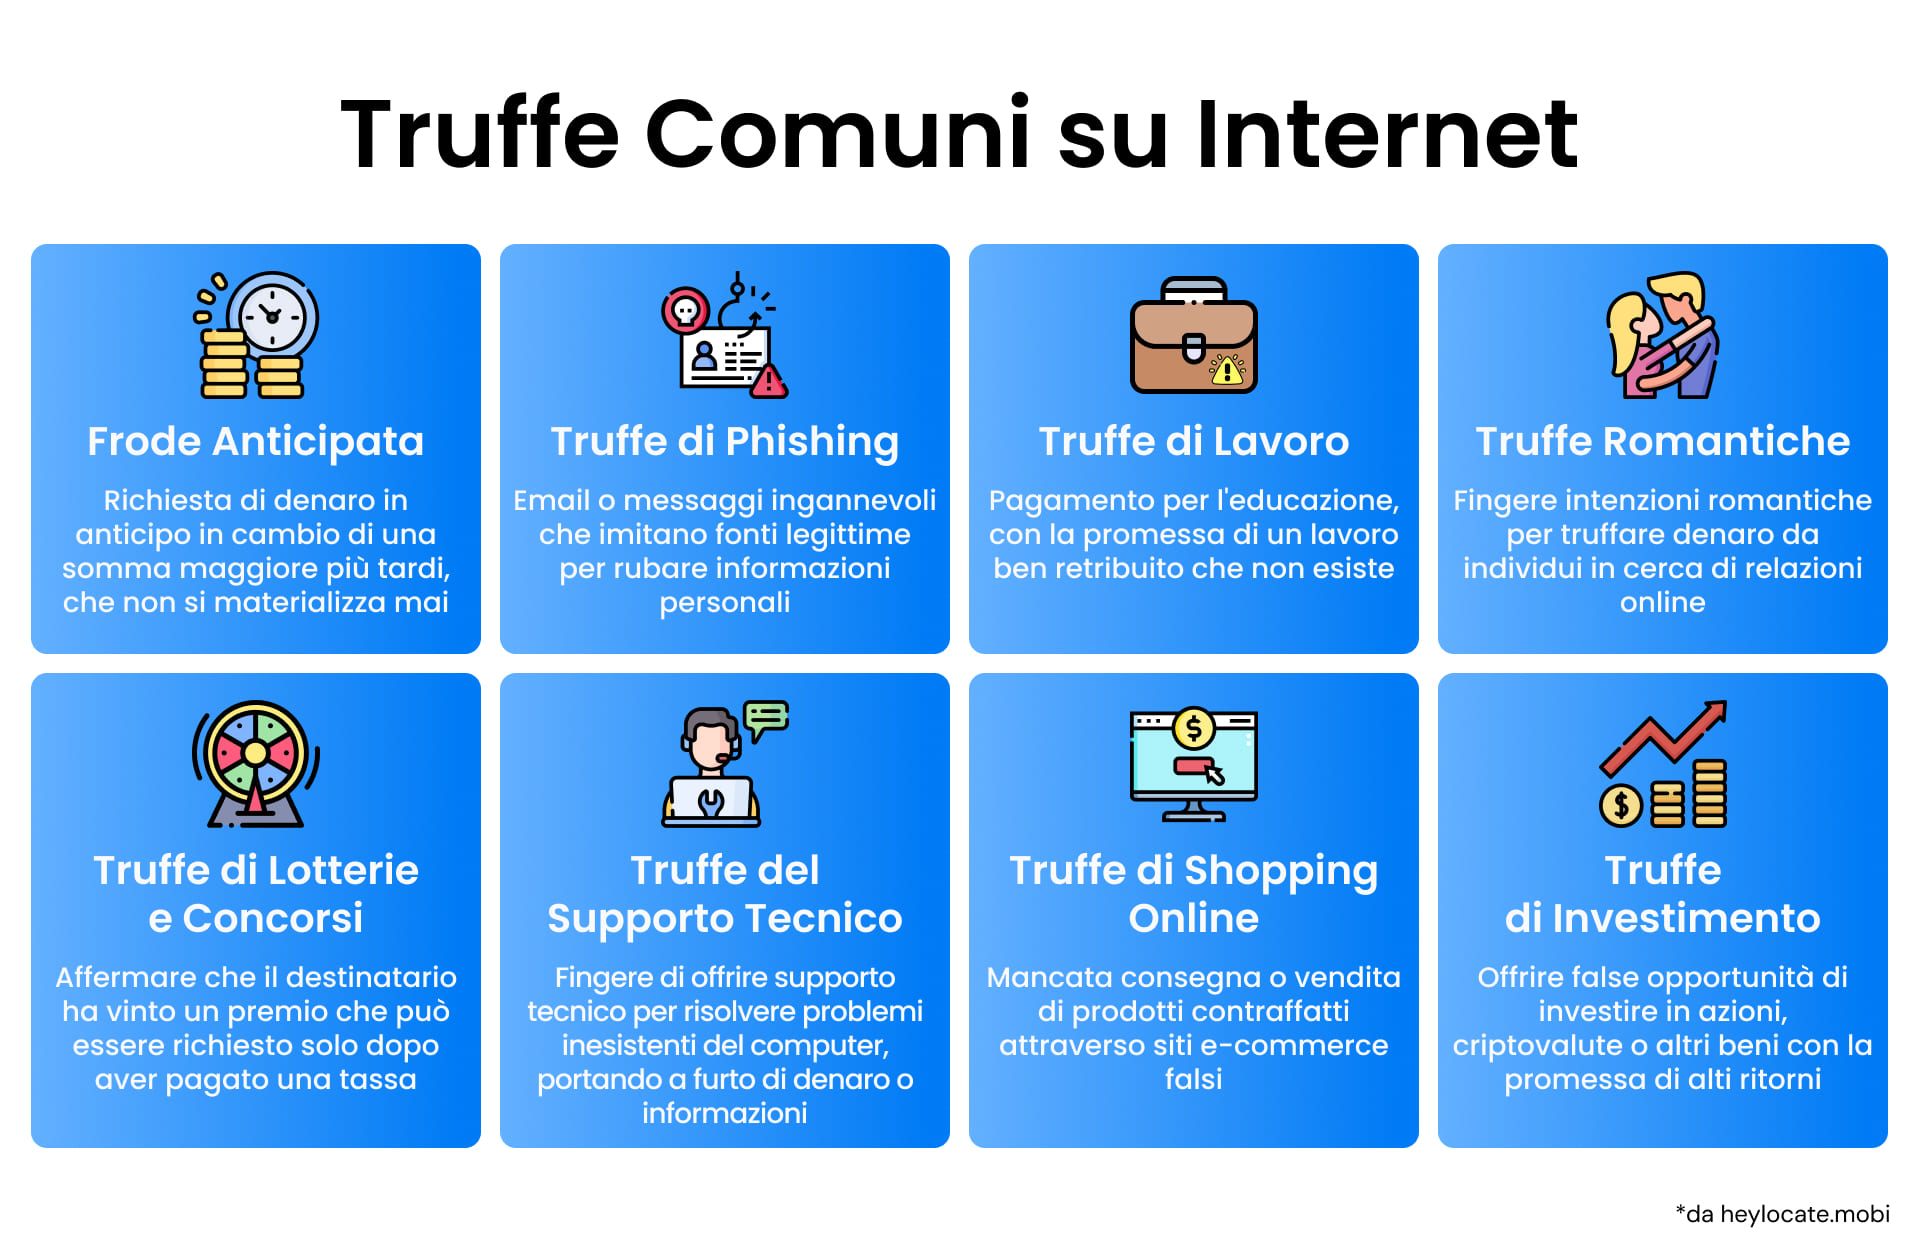 Un'infografica che illustra i vari tipi di truffe comuni su Internet, tra cui il phishing e le truffe sentimentali.